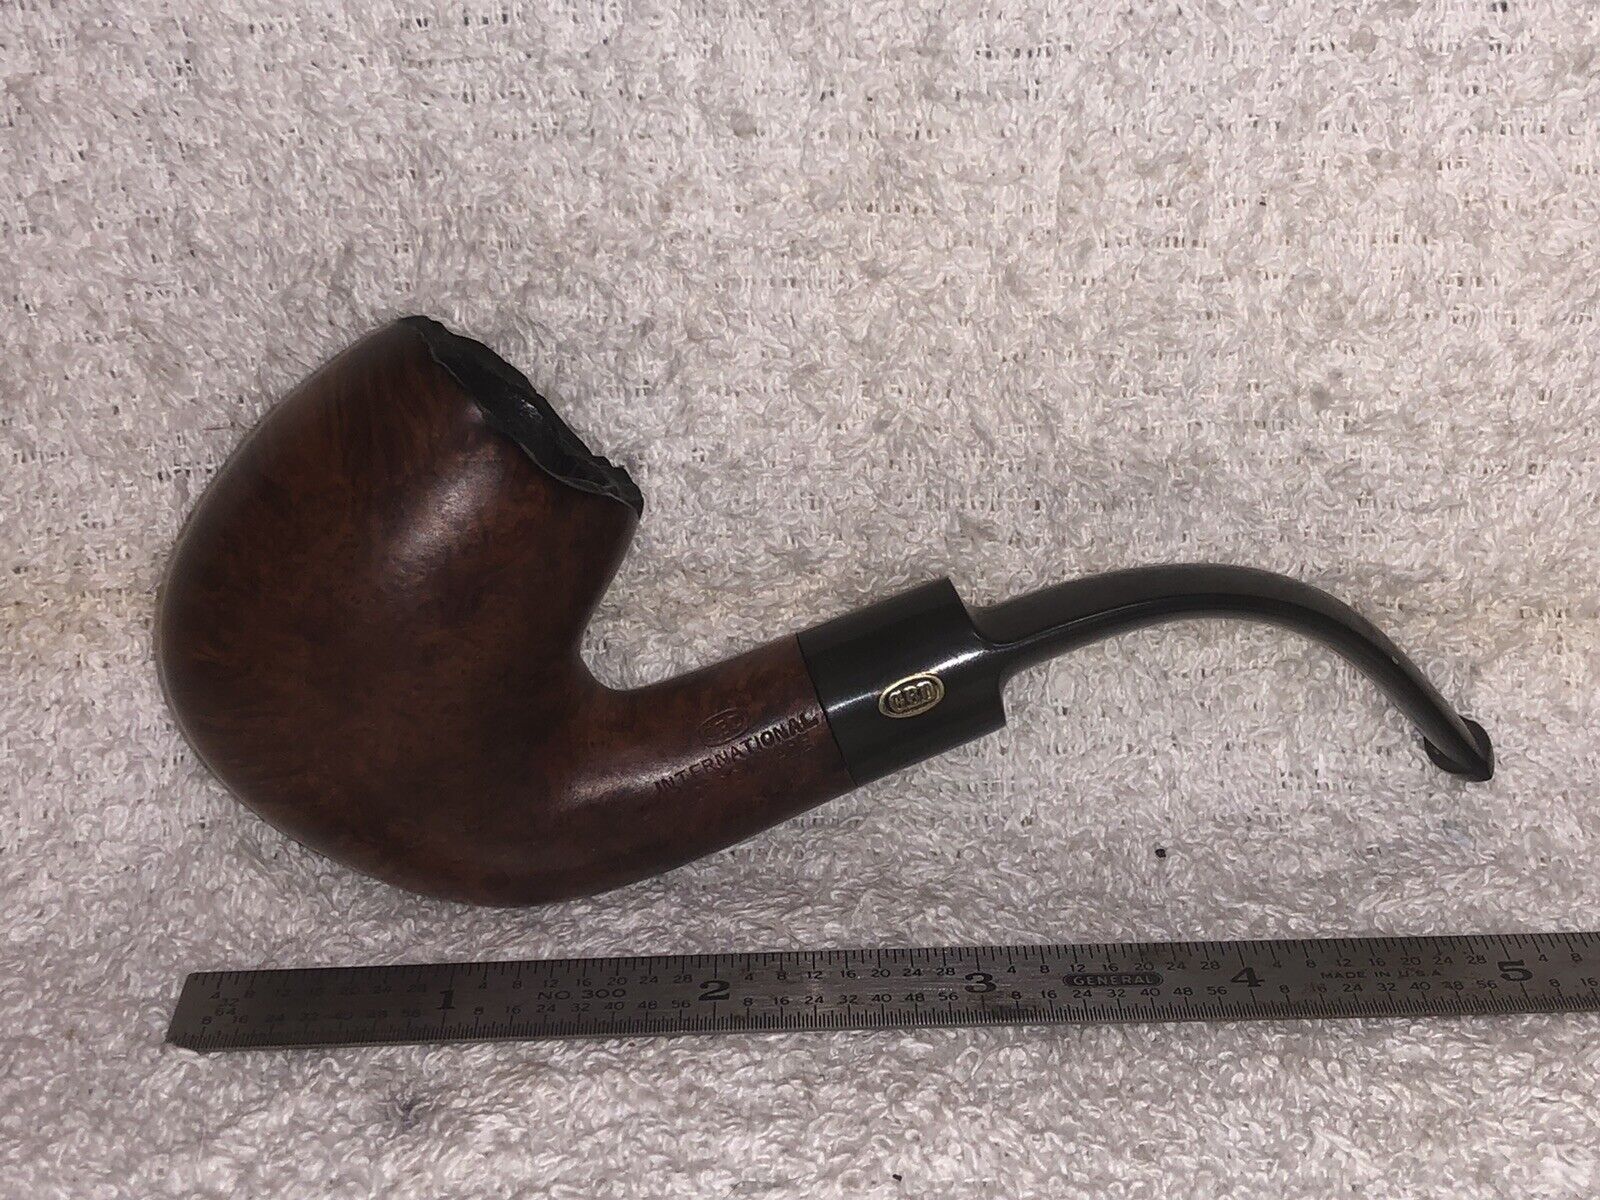 1864, GBD International￼, Tobacco Smoking Pipe, ￼Estate￼￼￼, 00108